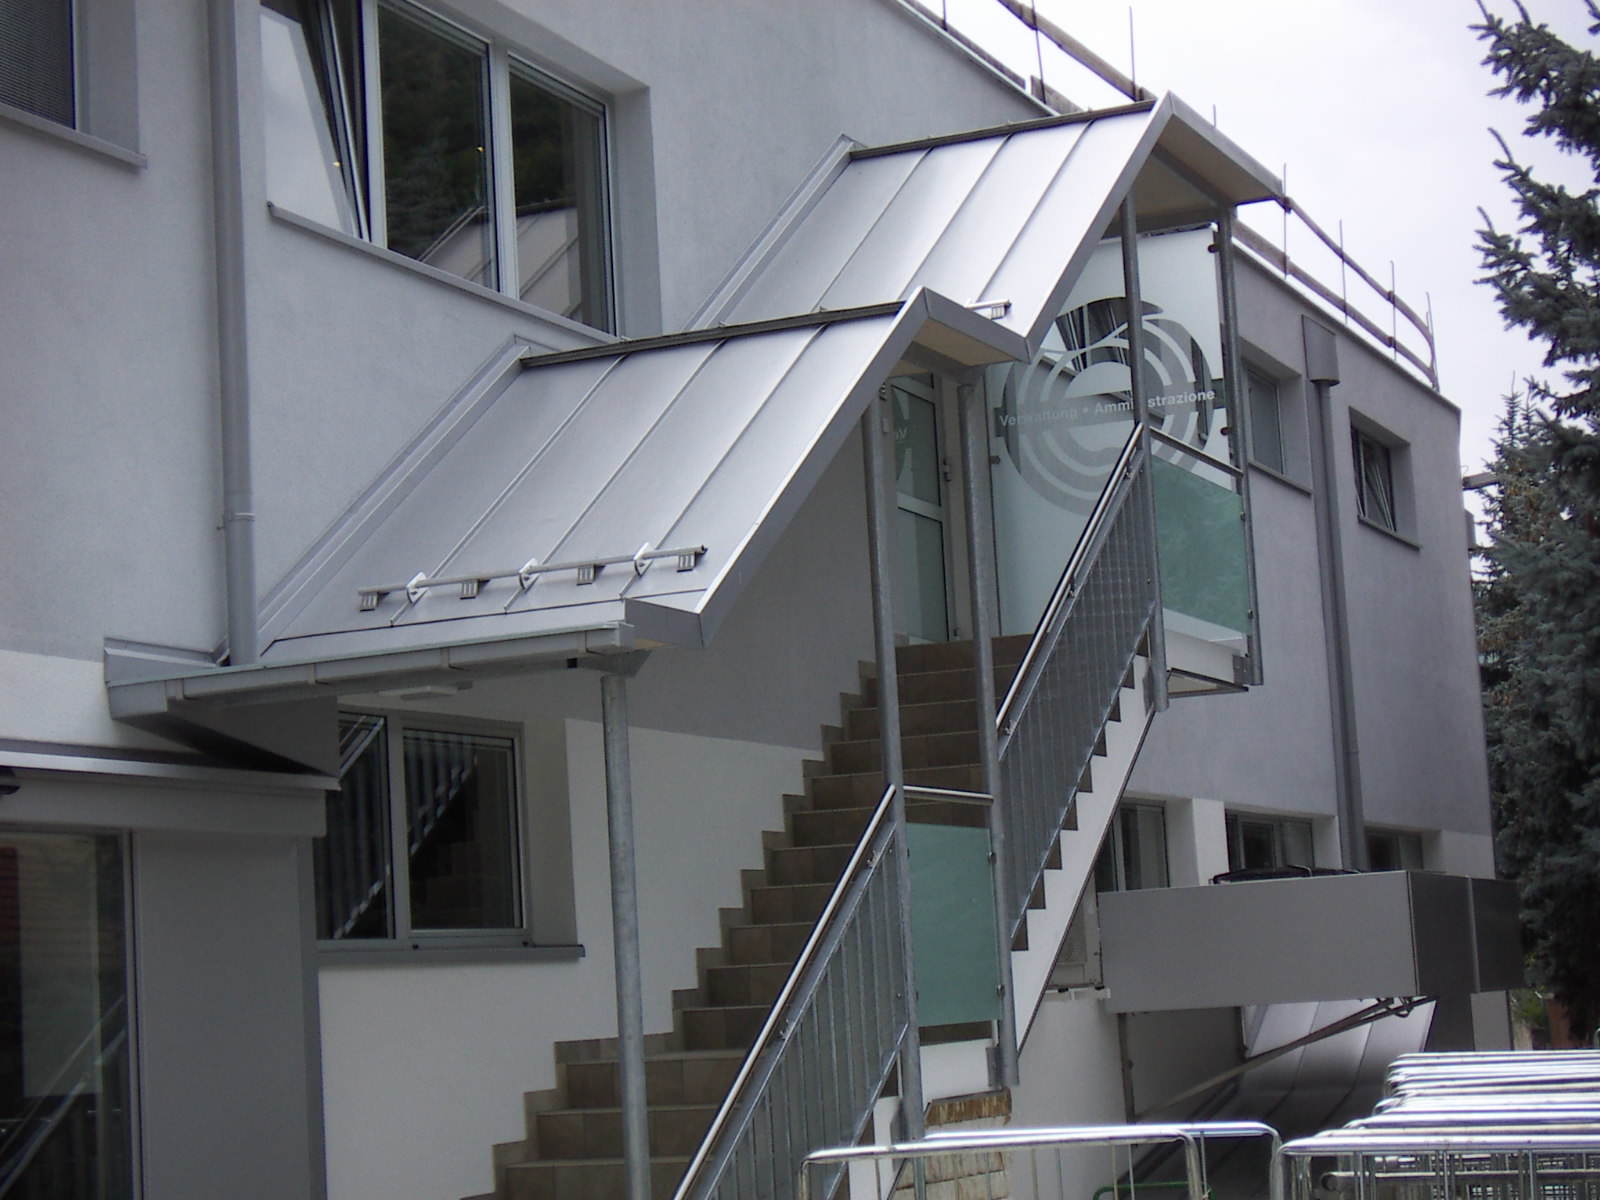 Fertigung, Lieferung und Montage der gesamten Treppenüberdachung mit Treppengeländer und Dacheindeckung in Doppelstehfalz Roofinox .